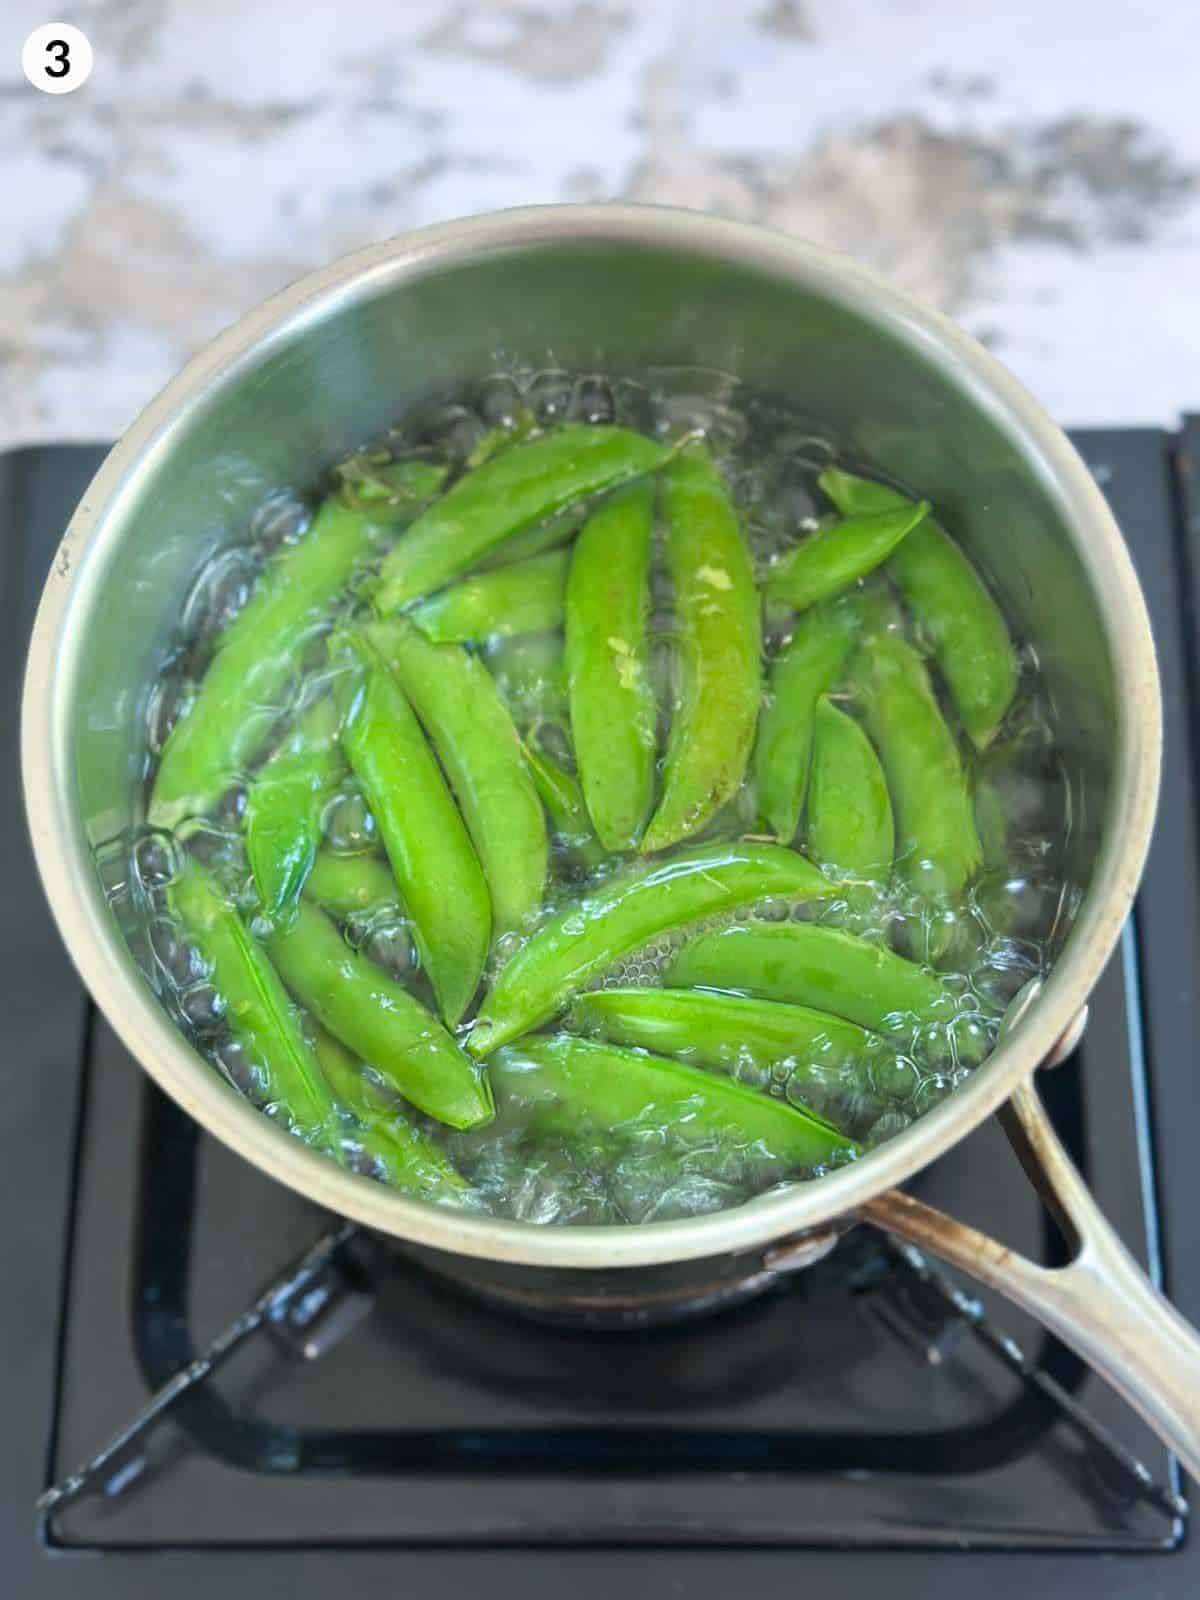 Boiling fresh peas in a saucepan